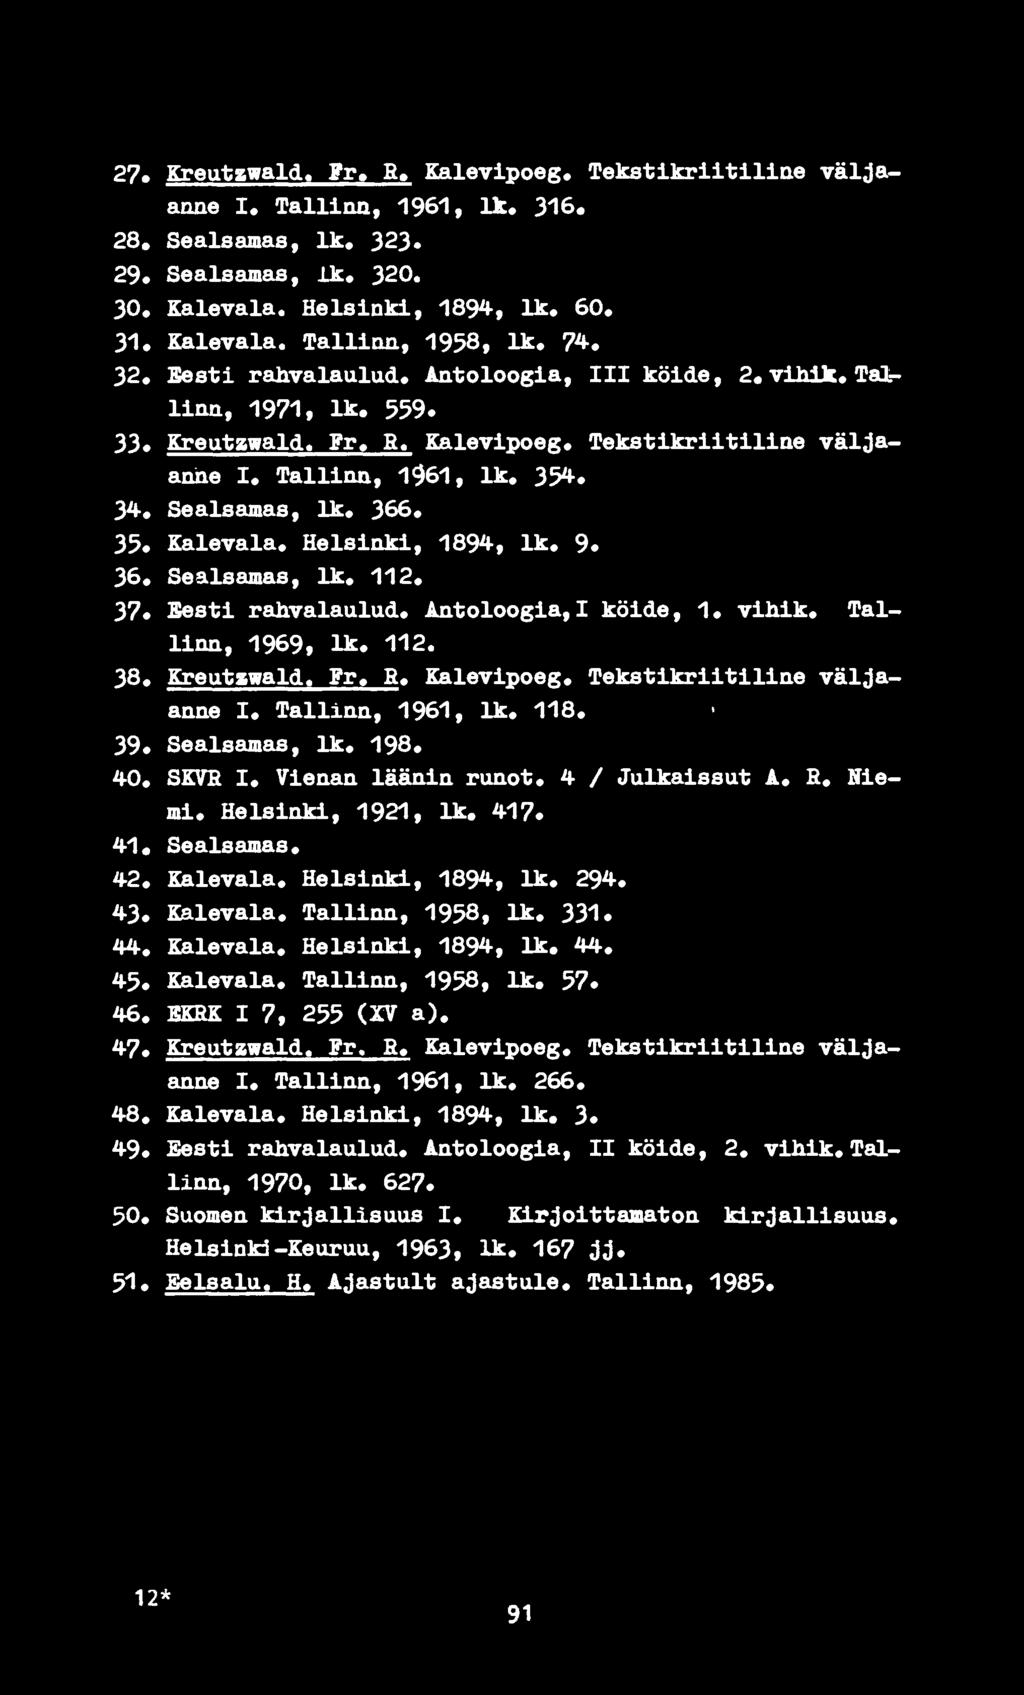 Helsinki, 1894, lk. 9. 36. Sealsamas, lk. 112. 37. Sesti rahvalaulud. Antoloogia,I köide, 1. vihik. Tallinn, 1969, lk. 112. 38. Kreutawald. Fr. R. Kalevipoeg. Tekstikriitiline väljaanne I.